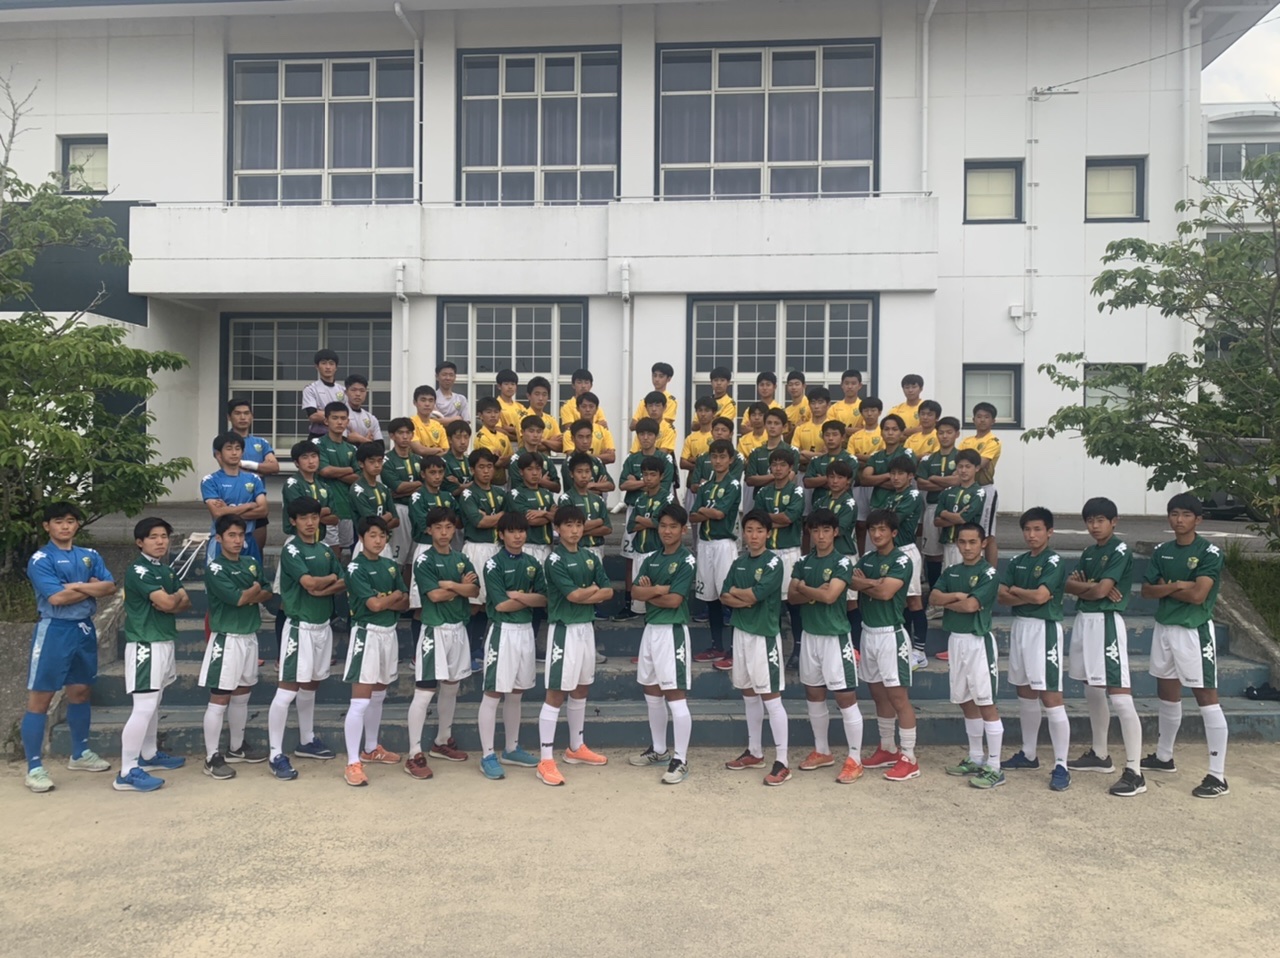 宮崎第一高校サッカー部 フットボールnavi